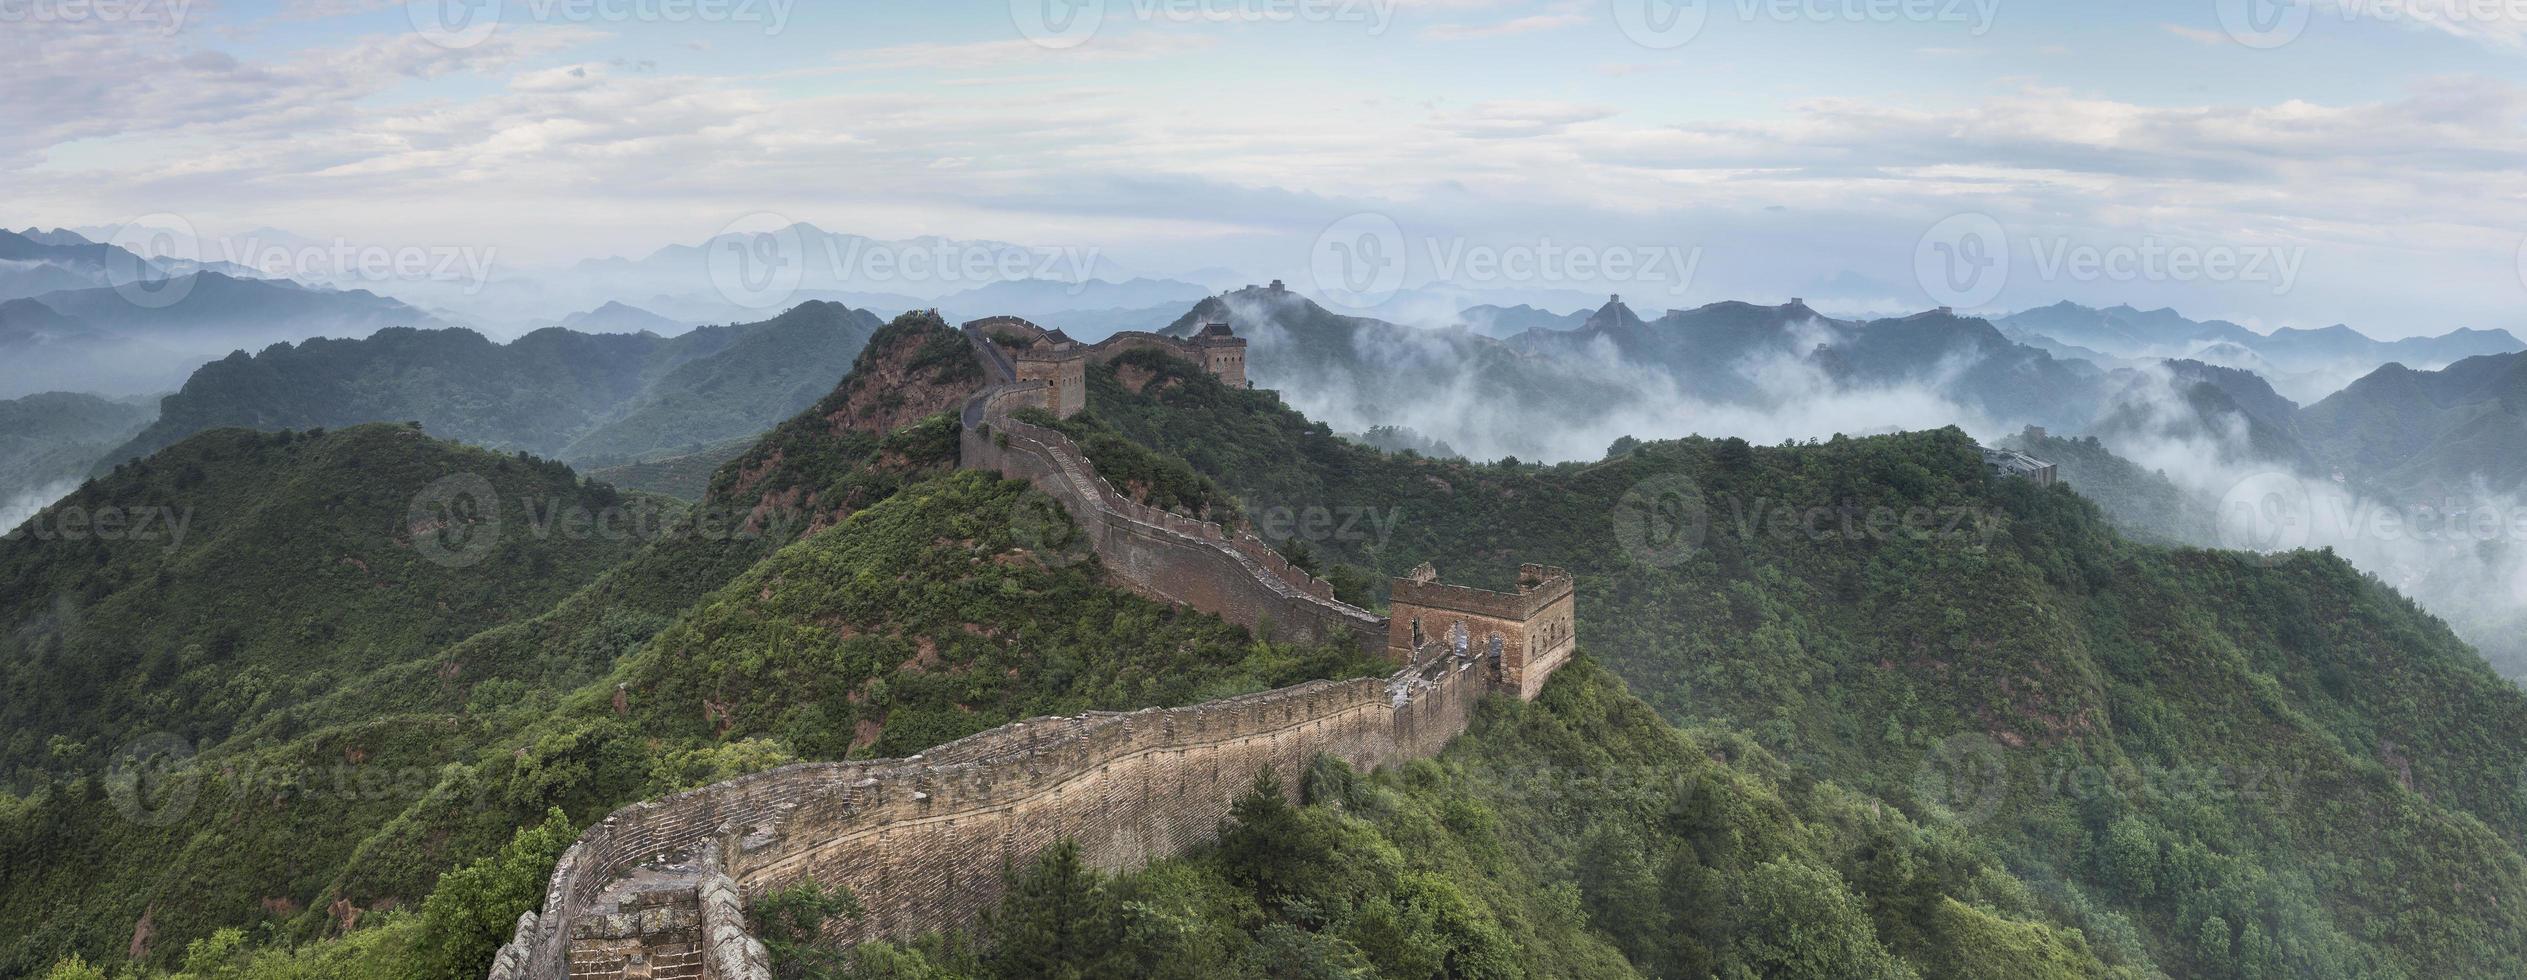 beijing de grote muur jinshanling wolken foto